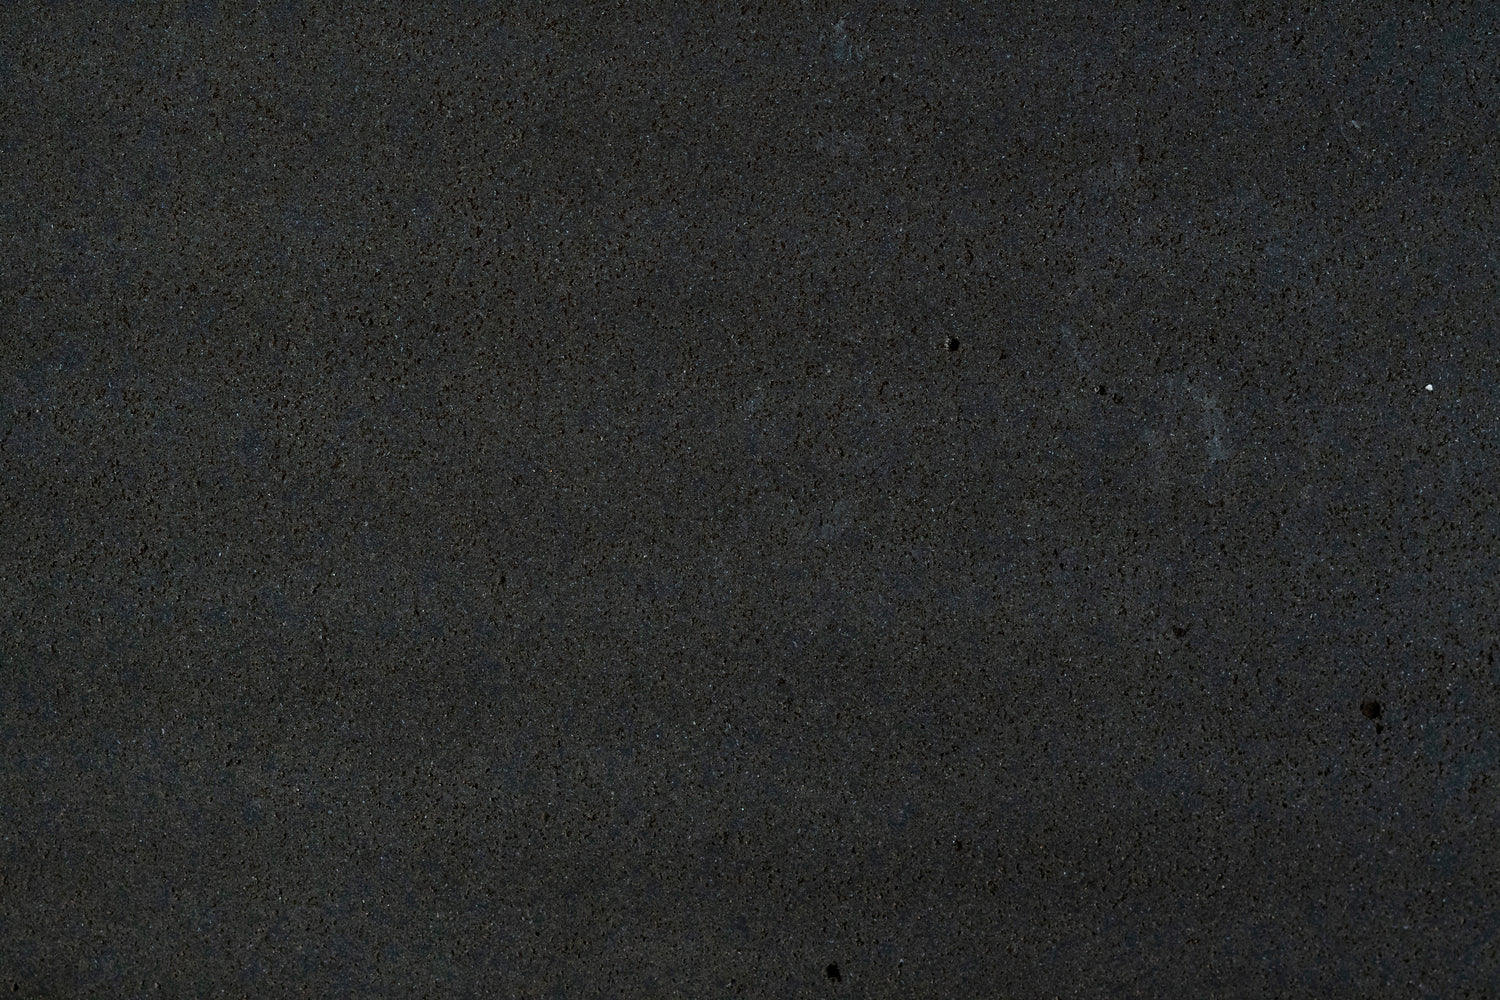 Full Tile Sample - Basalt Dark Basalt Tile - 18" x 18" x 1/2" Honed